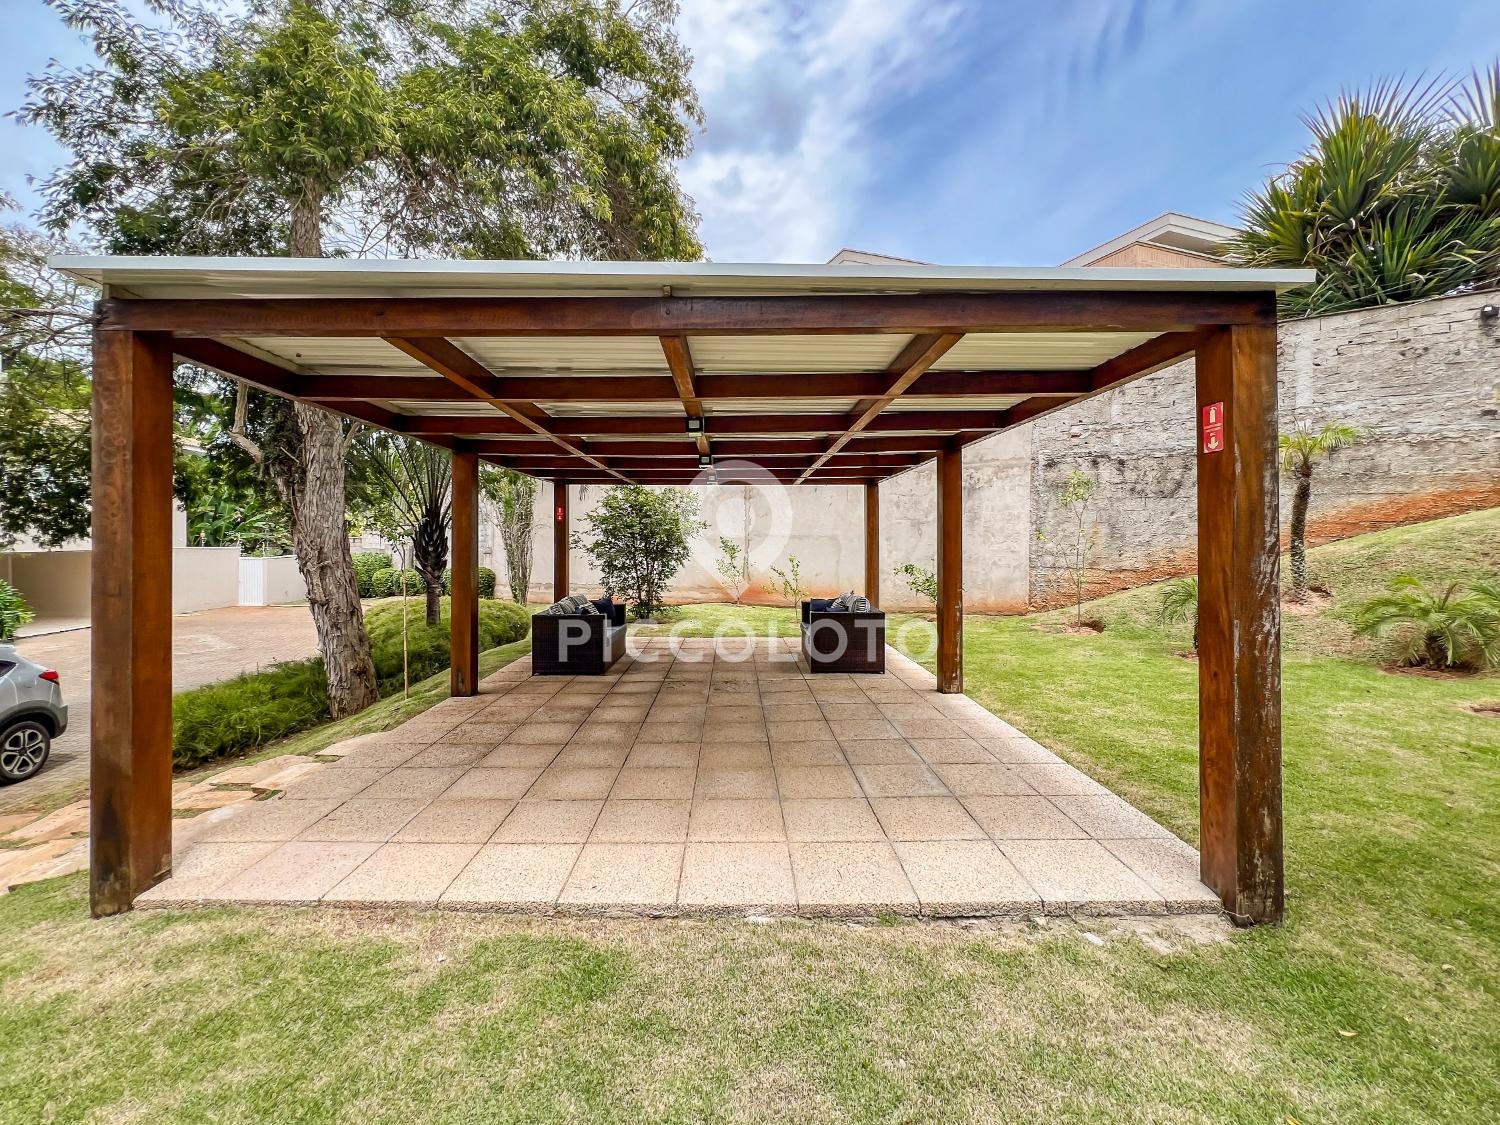 Piccoloto -Casa à venda no Jardim Botânico (Sousas) em Campinas